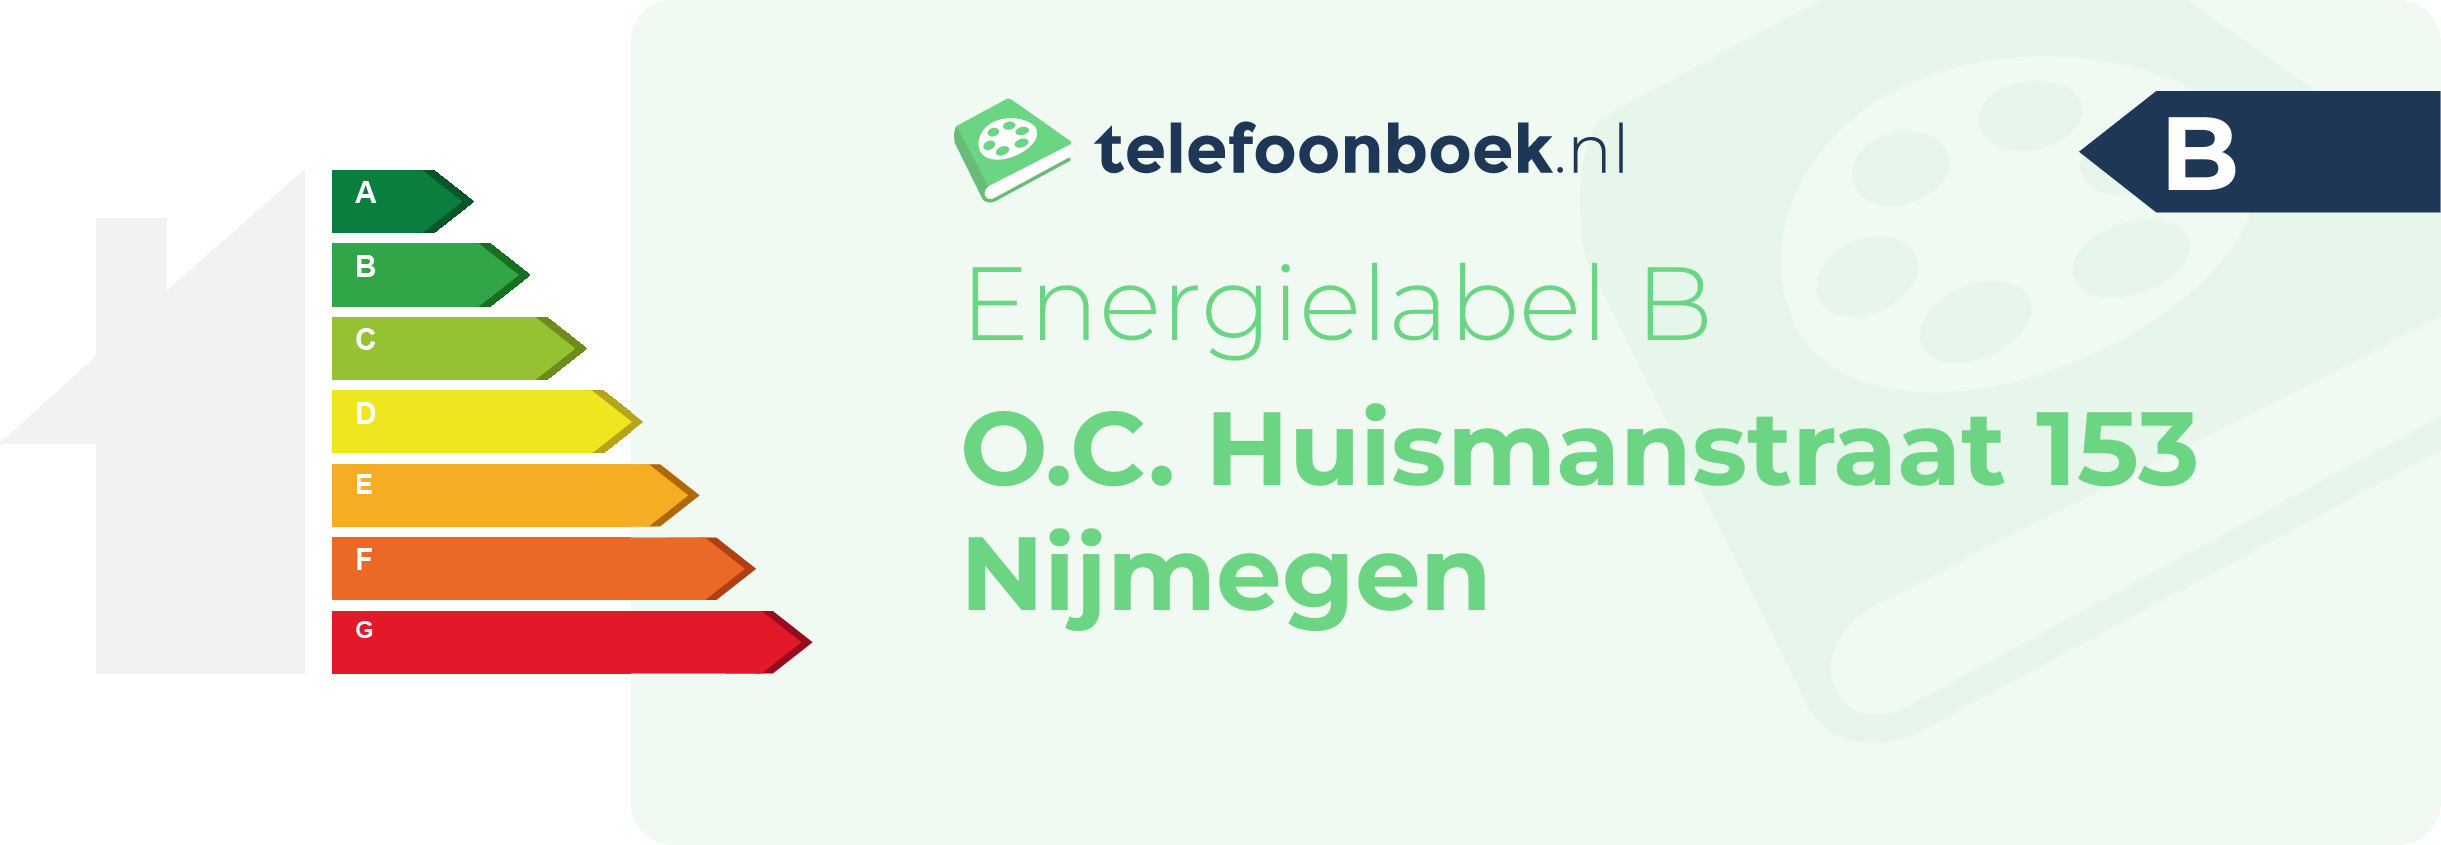 Energielabel O.C. Huismanstraat 153 Nijmegen